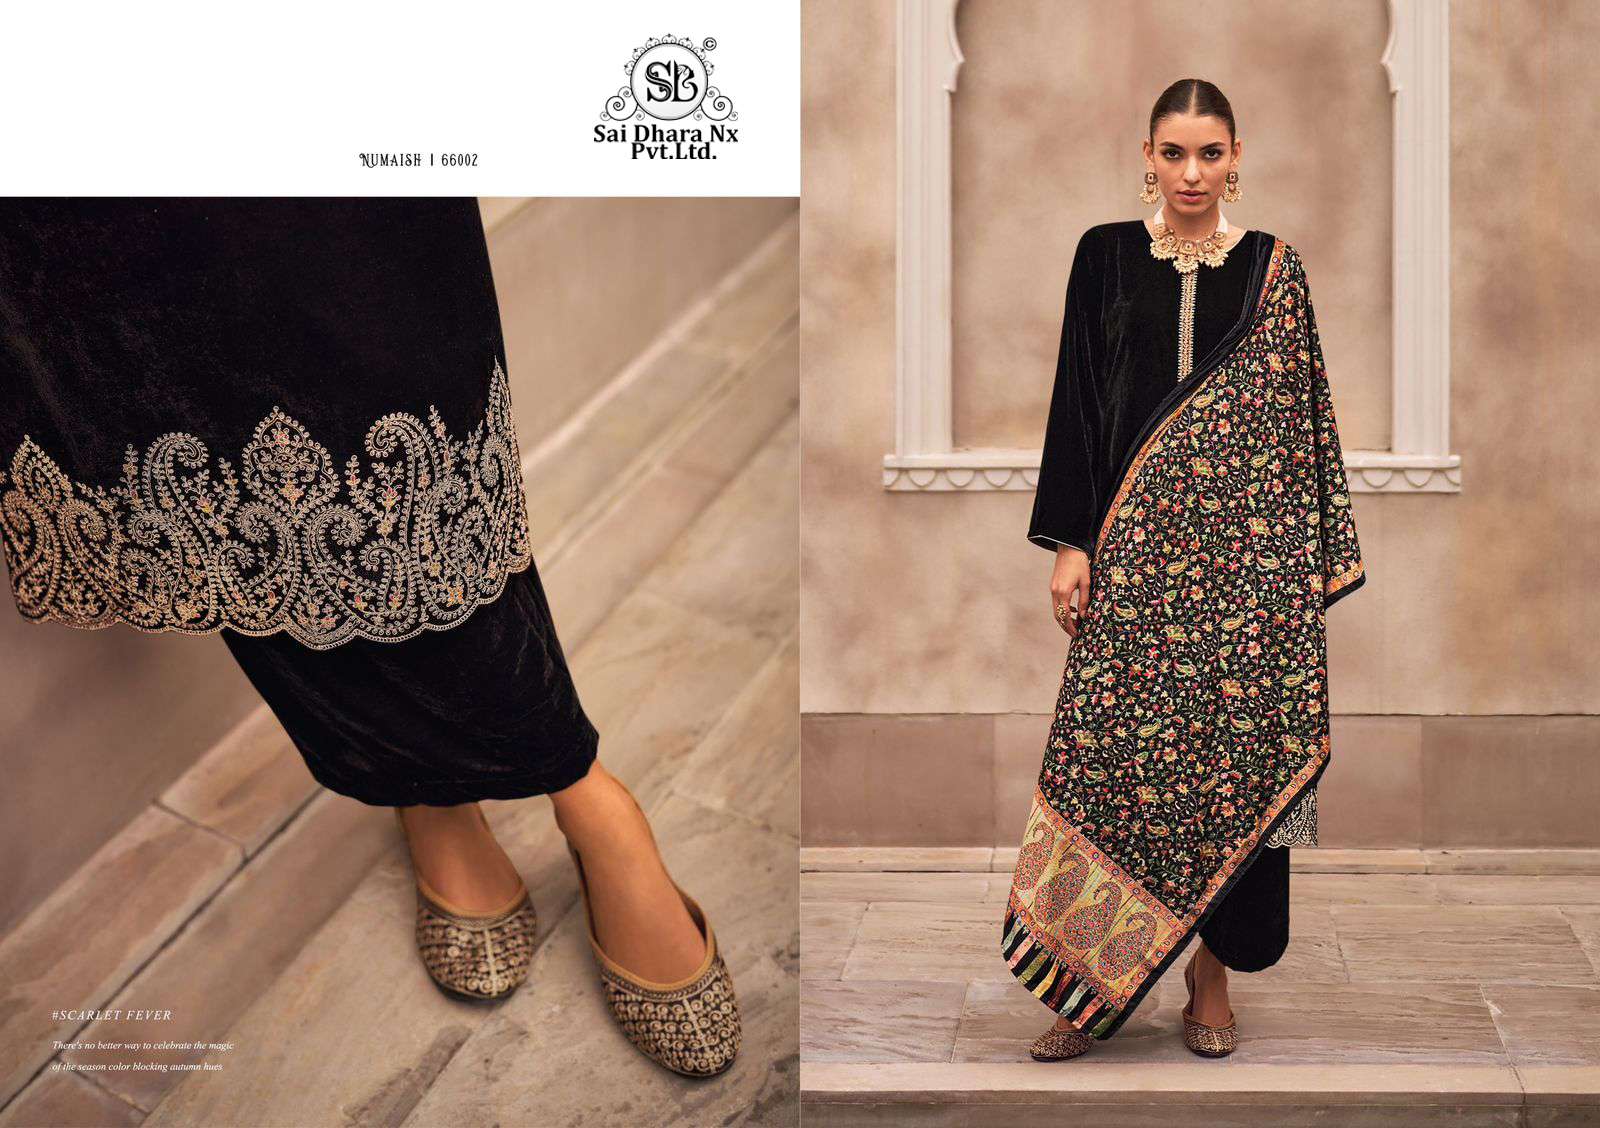 mumtaz arts presents pure velvet 3 piece pakistani suit wholesale market in surat - SaiDharaNx